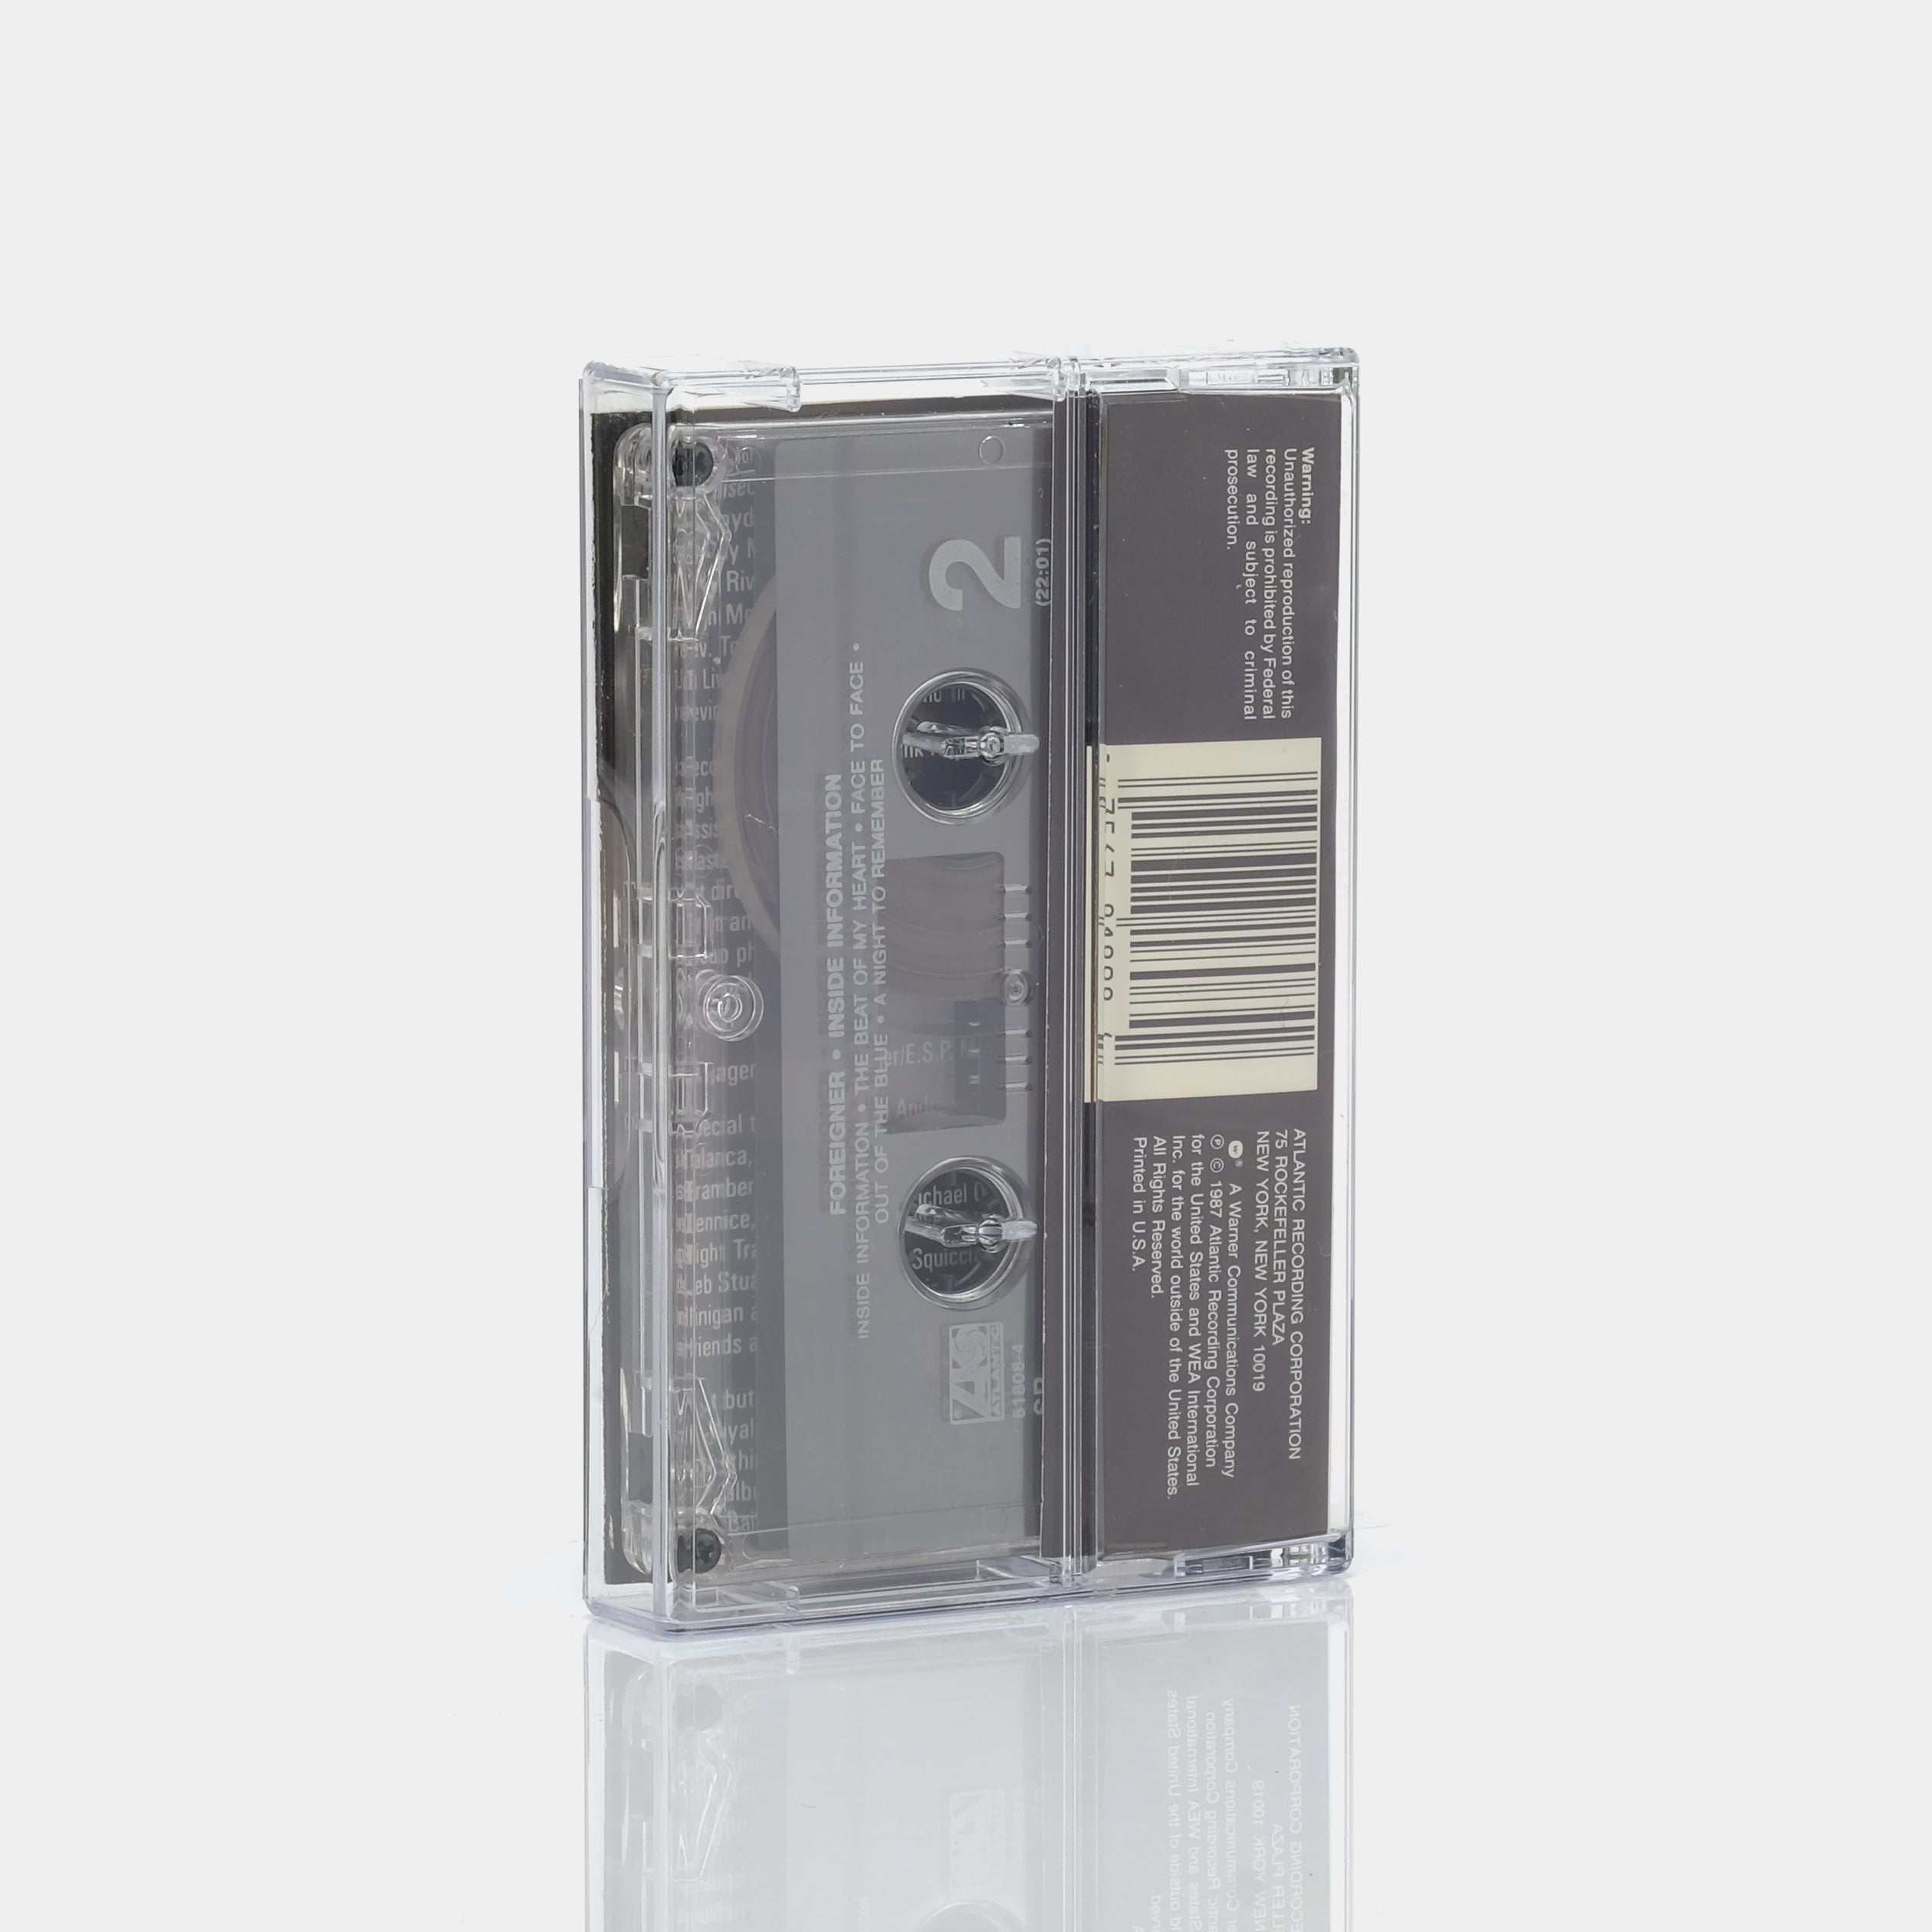 Foreigner - Inside Information Cassette Tape